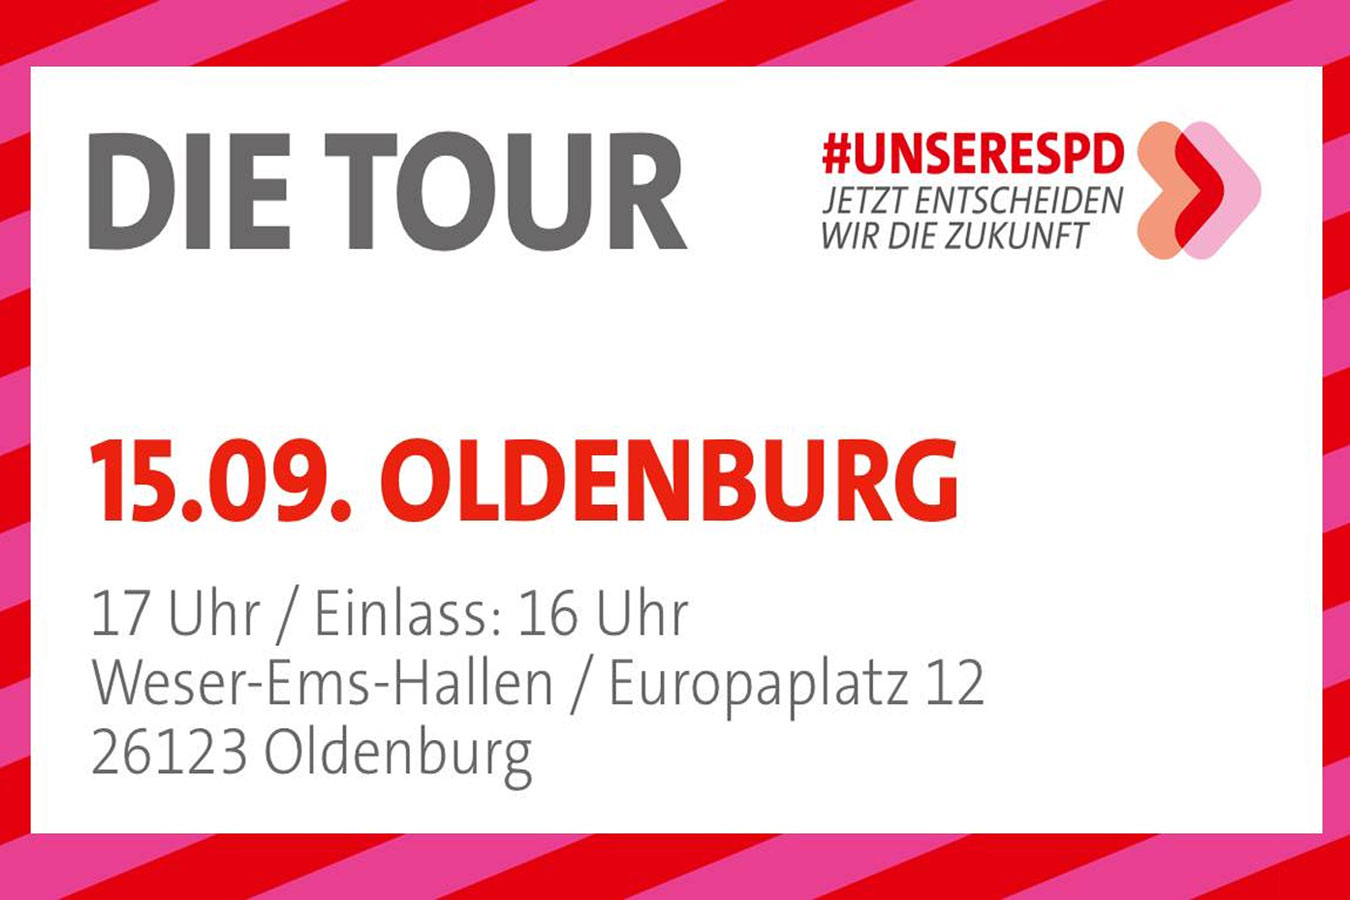 Unsere SPD – Die Tour